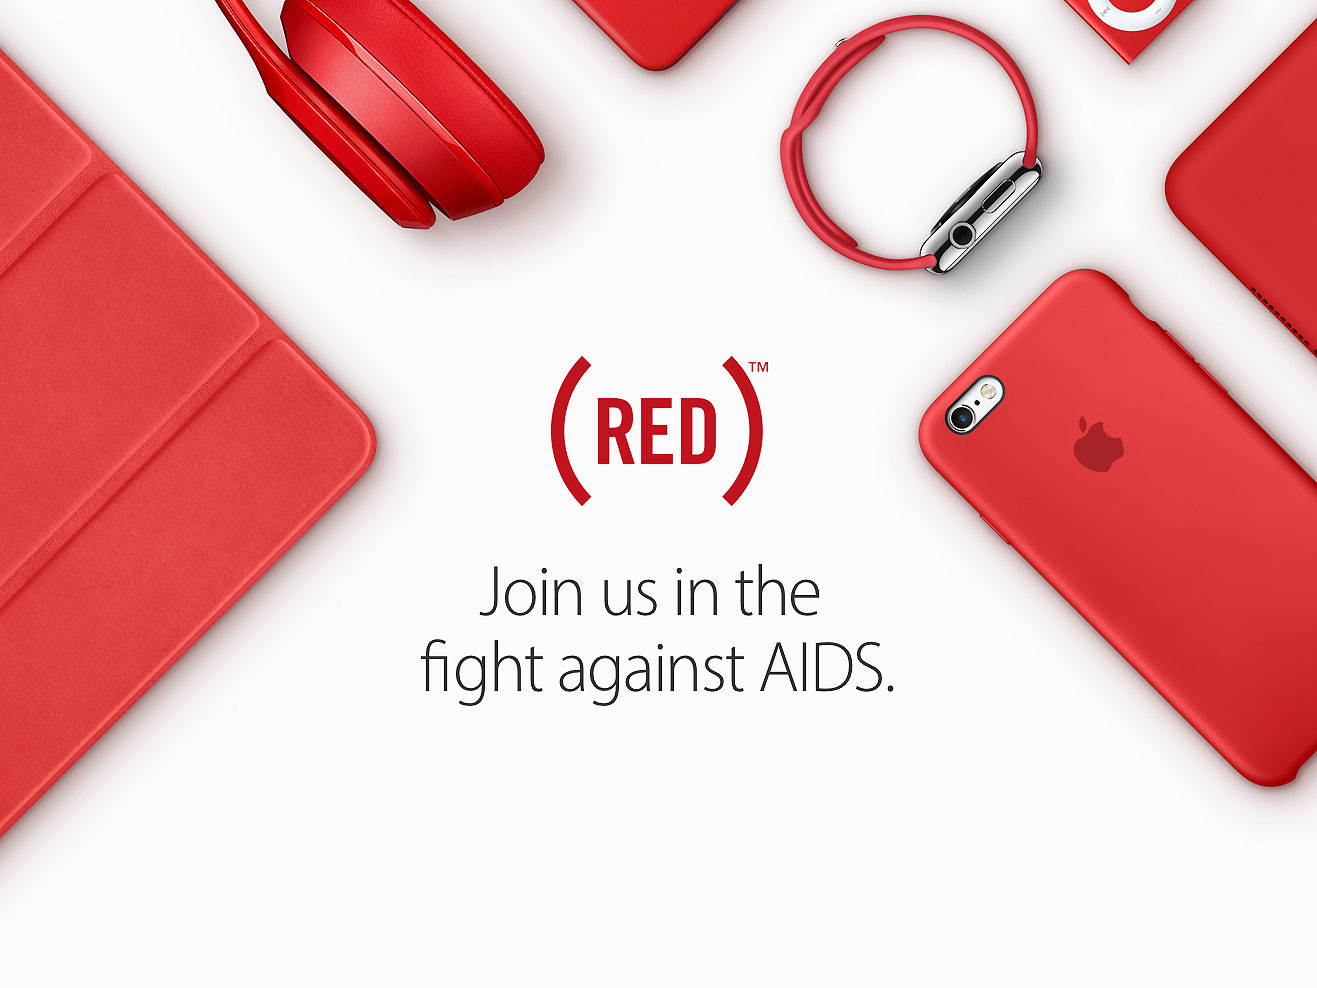 درآمد حاصل از فروش گجت های قرمز اپل برای مبارزه با ایدز صرف می شود